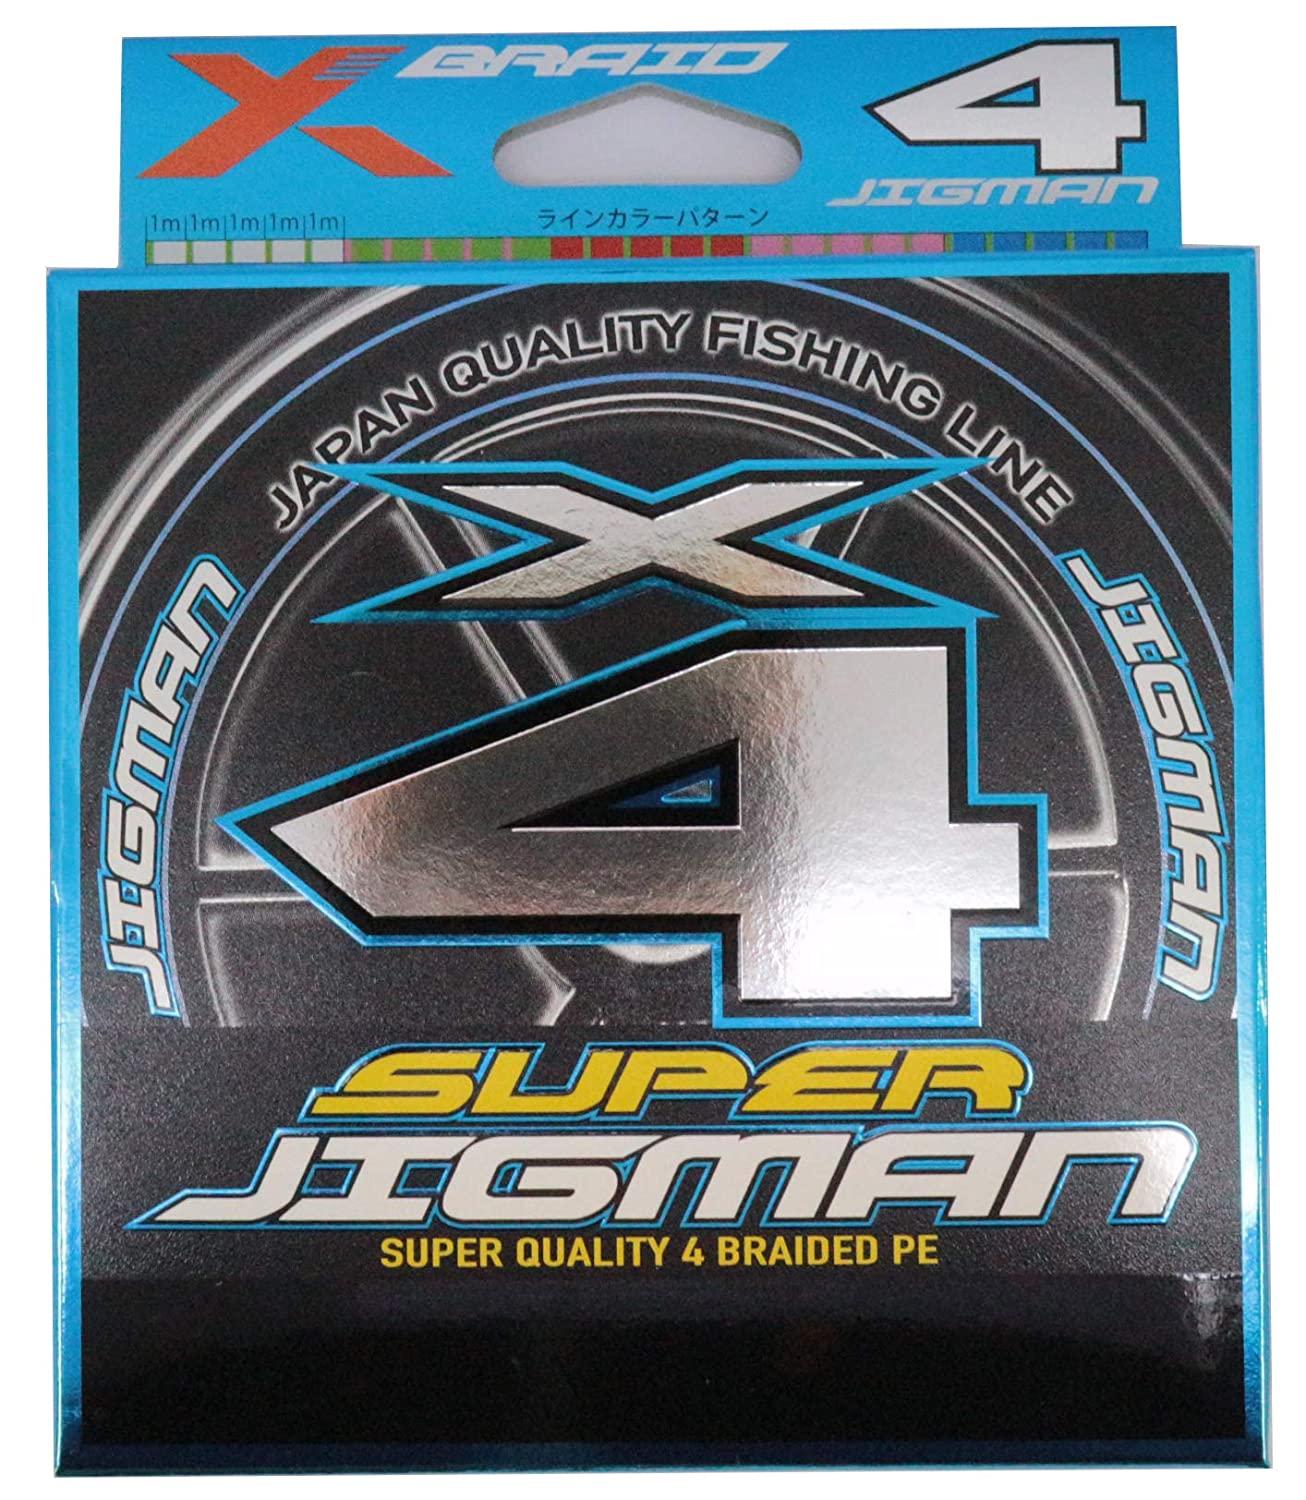  X-BRAID SUPER JIGMAN X4 300m 1.5 25lb